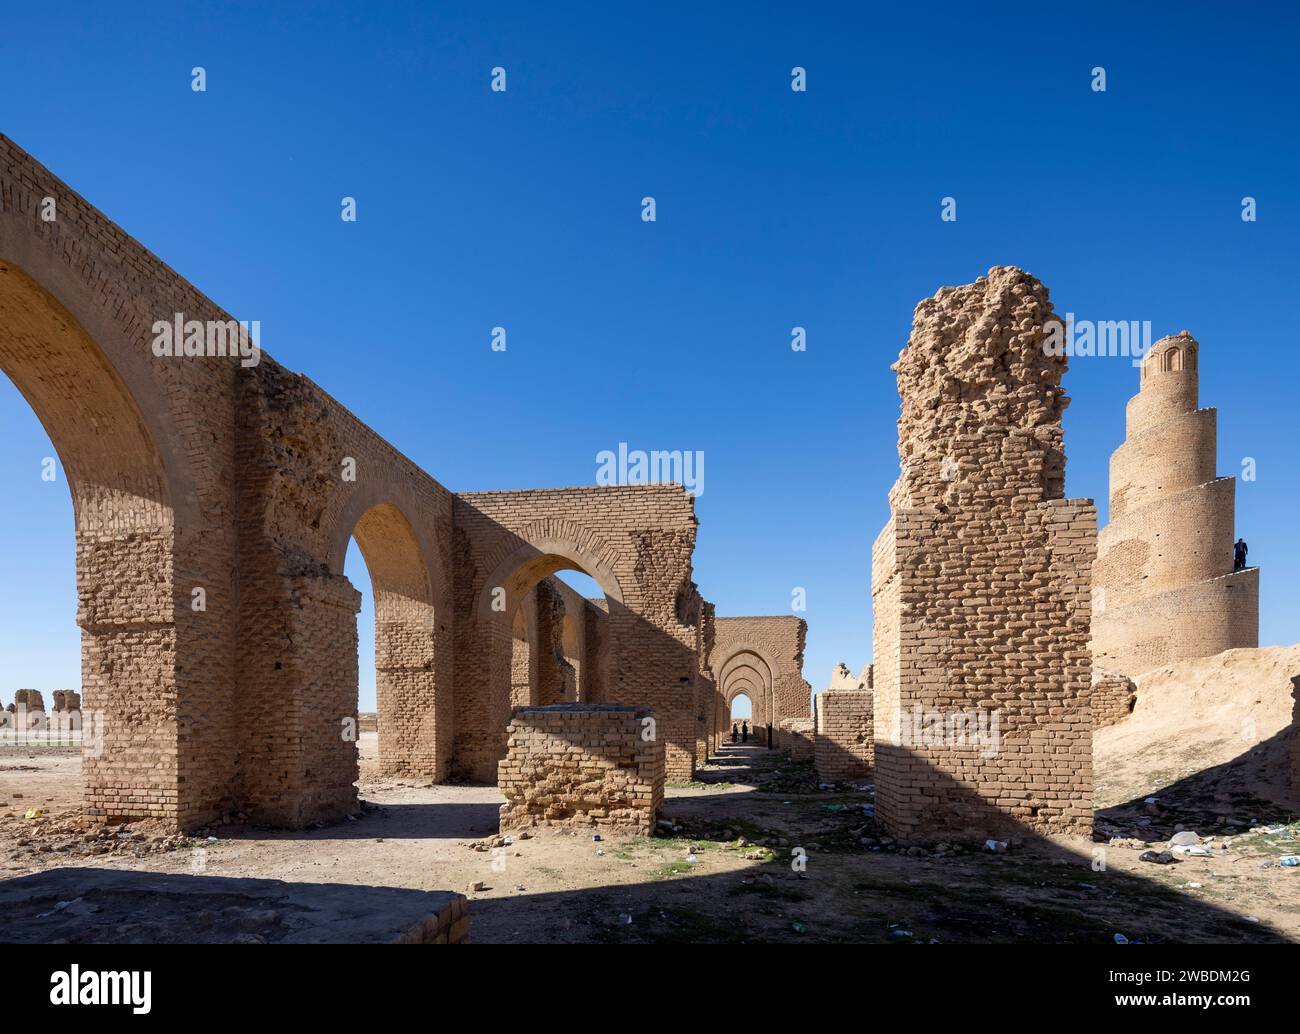 Turisti iracheni che visitano la Moschea Abbaside Abu Dulaf del IX secolo, Samarra, Iraq Foto Stock